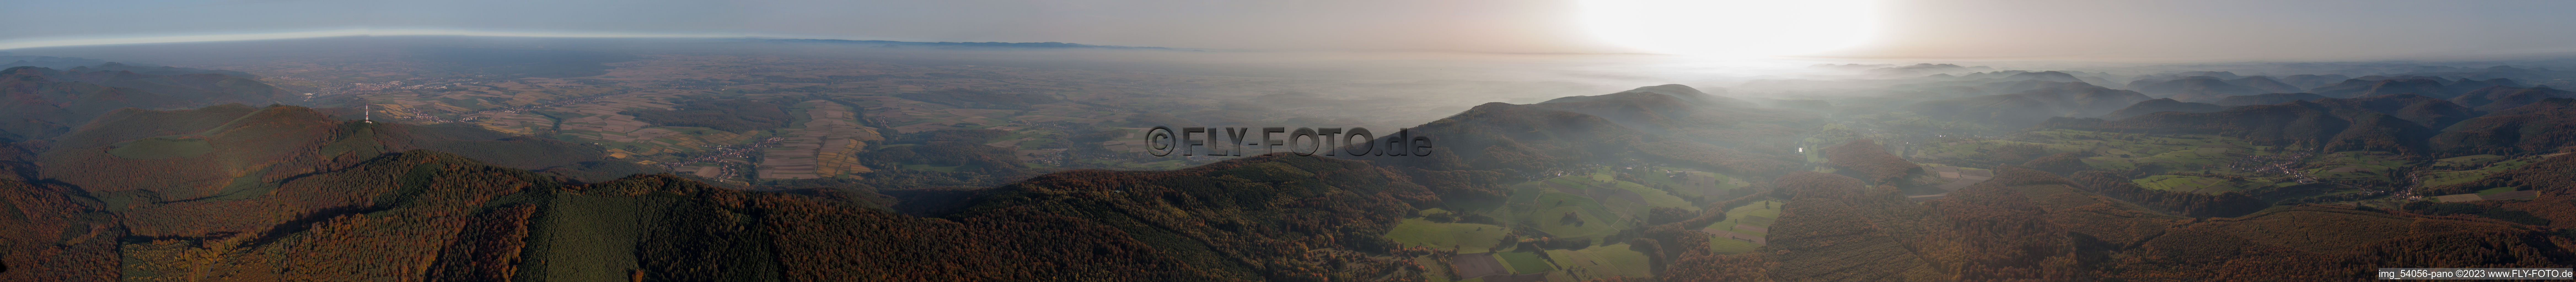 Climbach im Bundesland Bas-Rhin, Frankreich von der Drohne aus gesehen